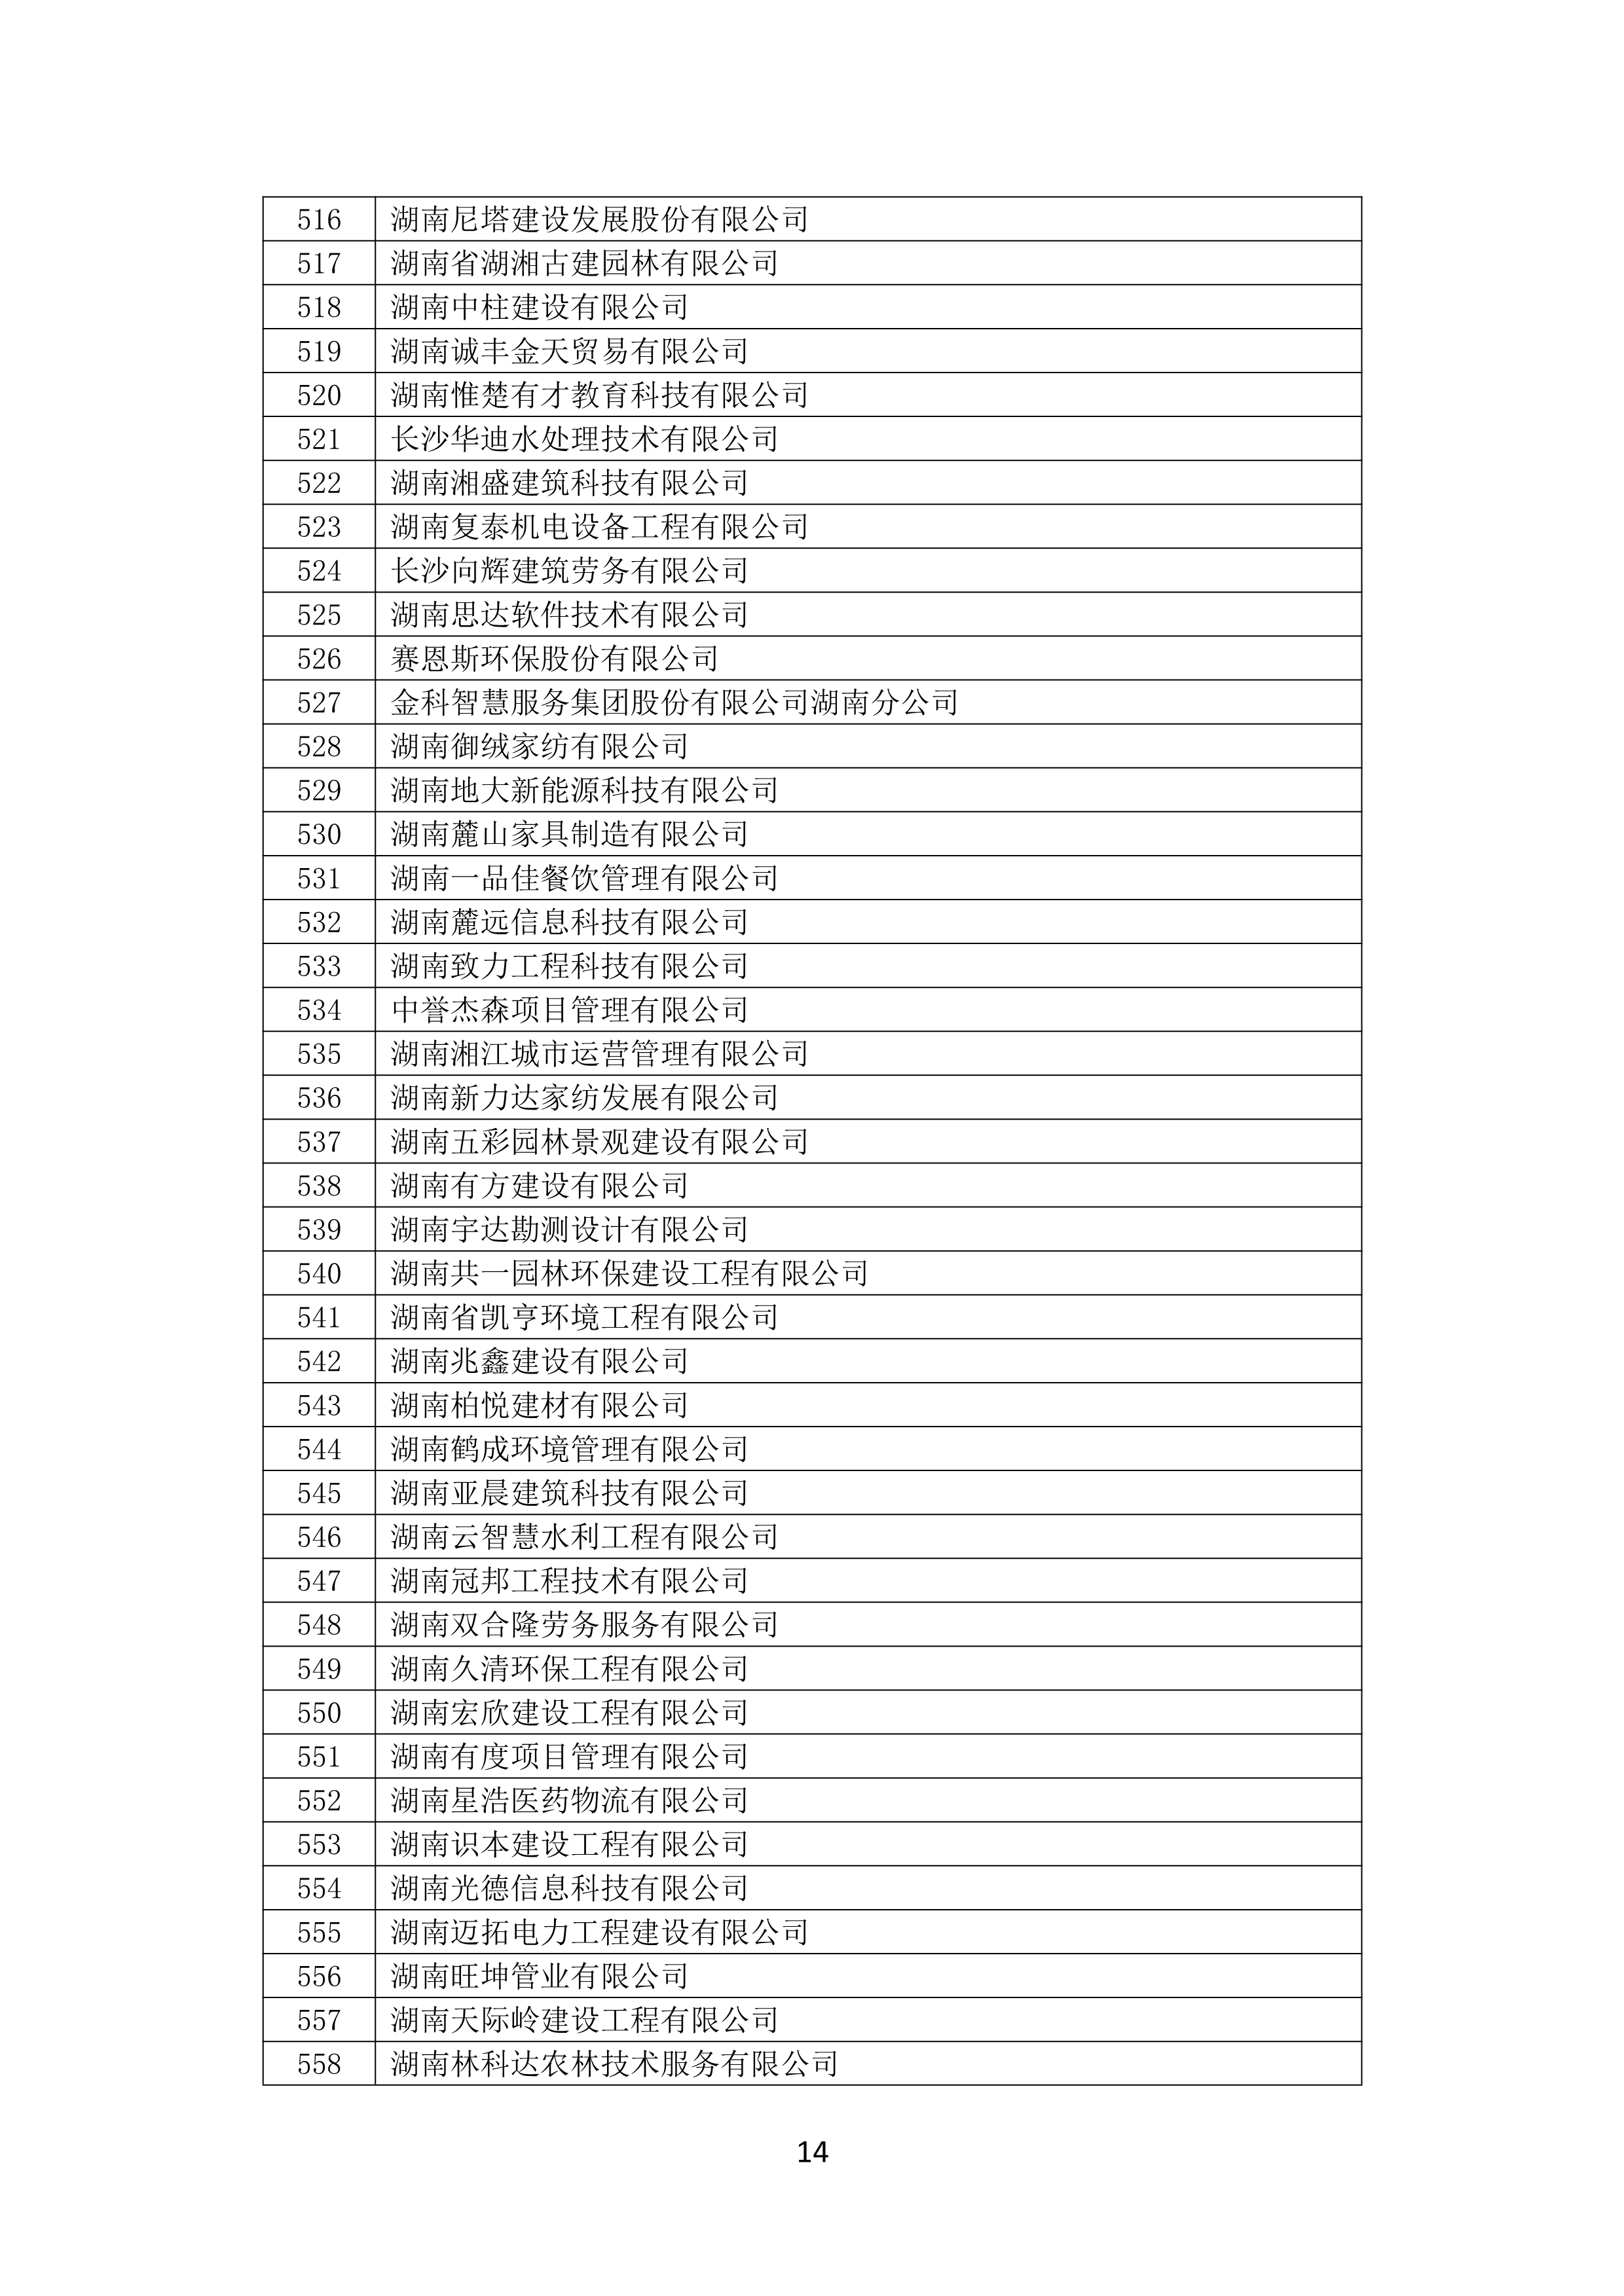 2021 年(nián)度湖南省守合同重信用企業名單_15.png